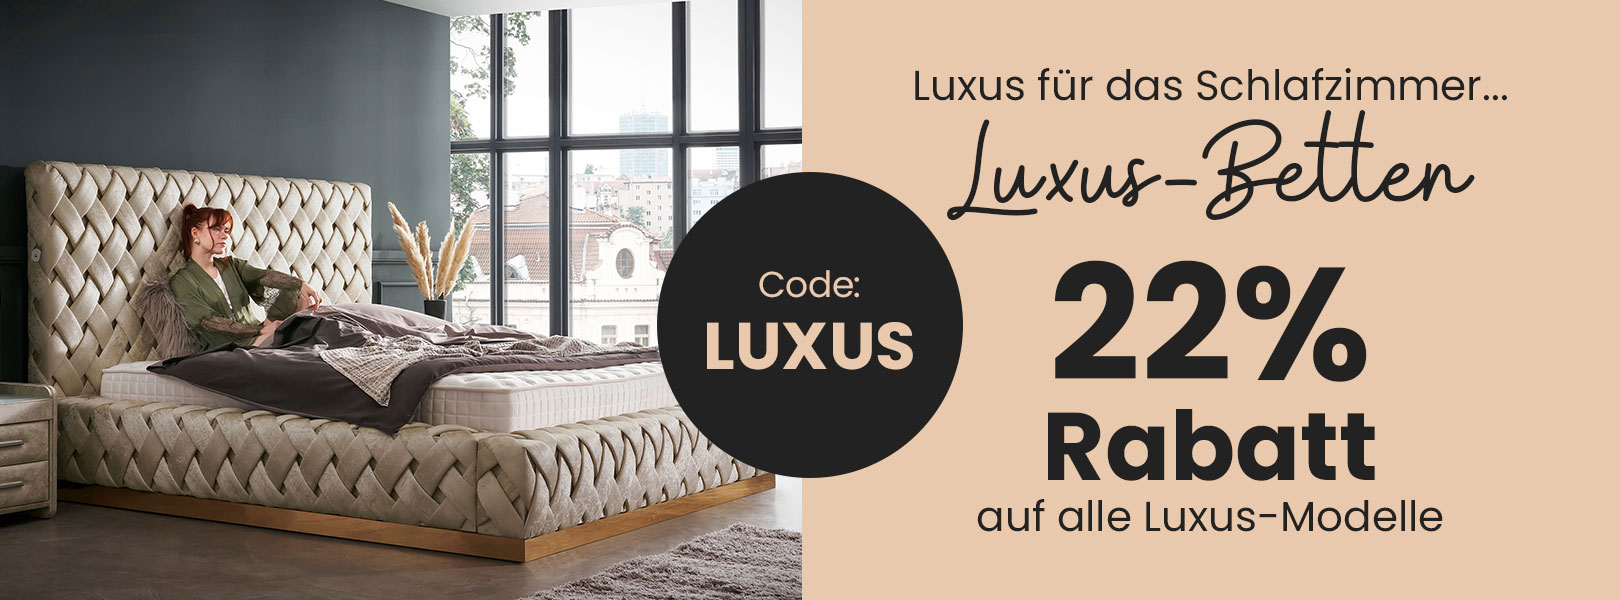 Luxus für das Schlafzimmer... Luxus-Betten 22% Rabatt auf alle Luxus-Modelle